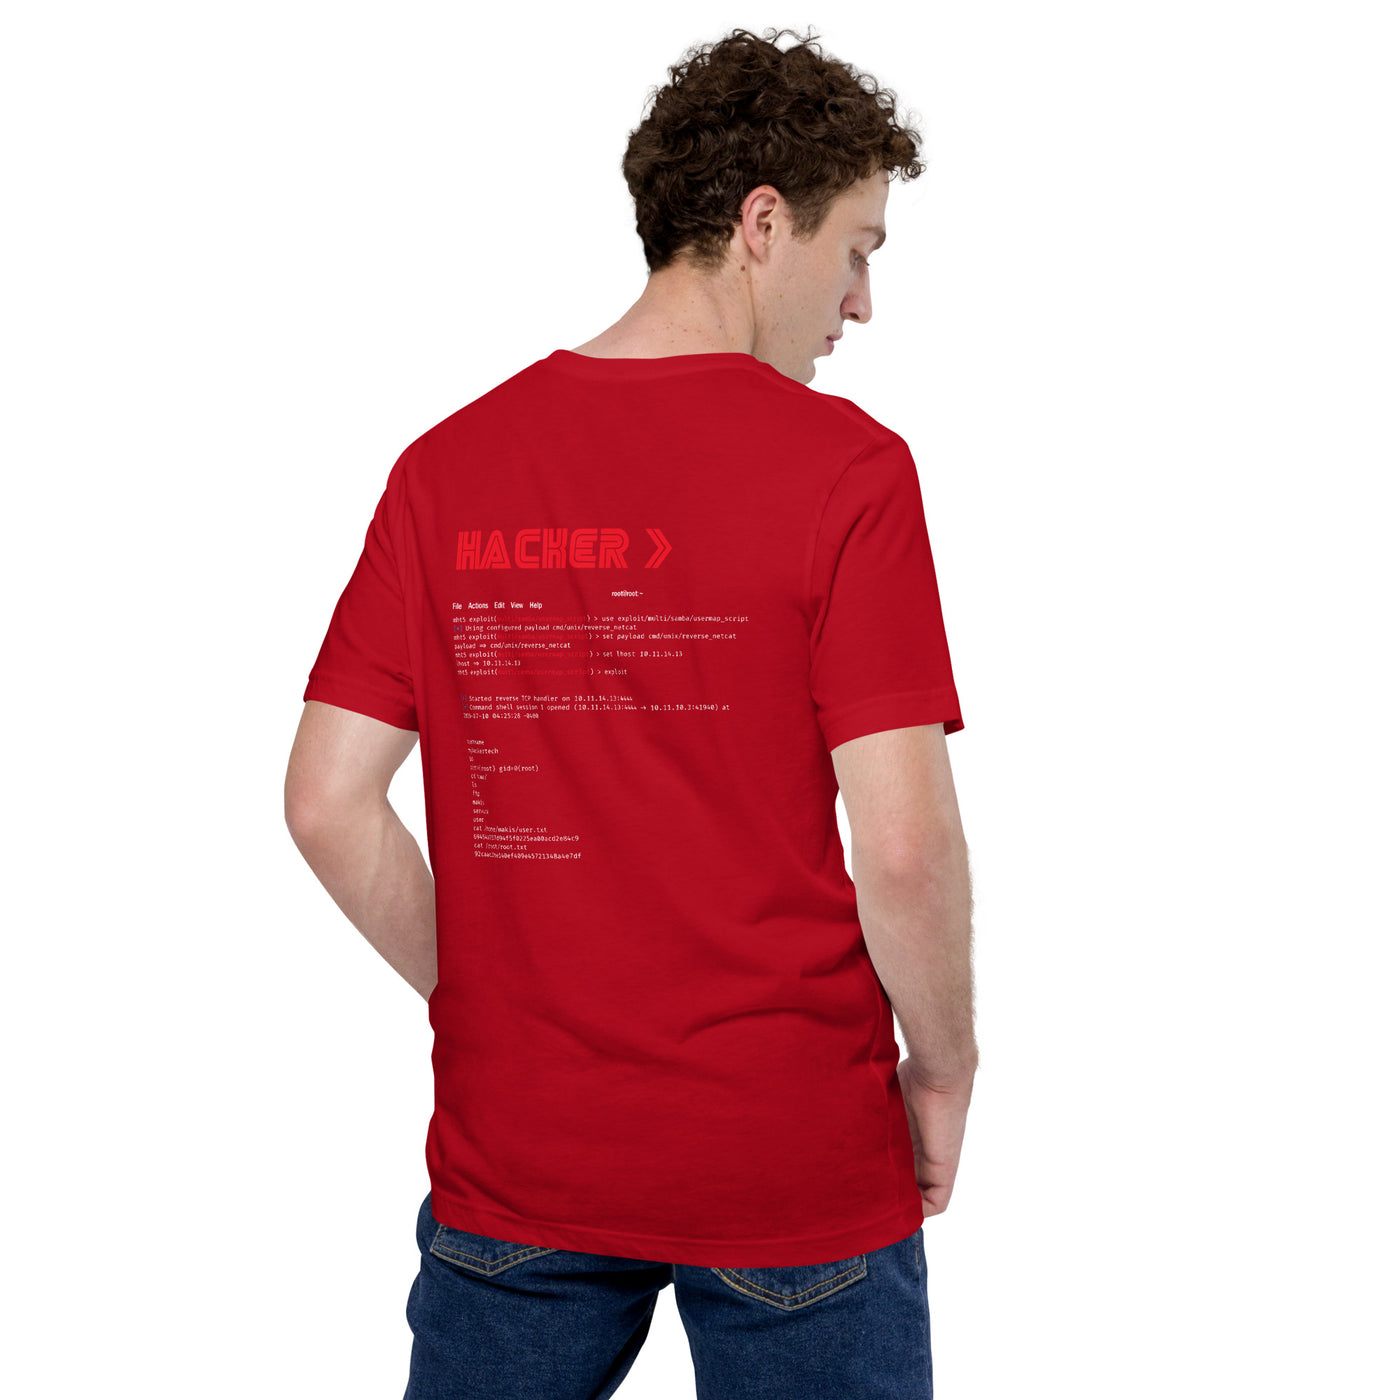 Hacker v3 - Unisex t-shirt (back print)